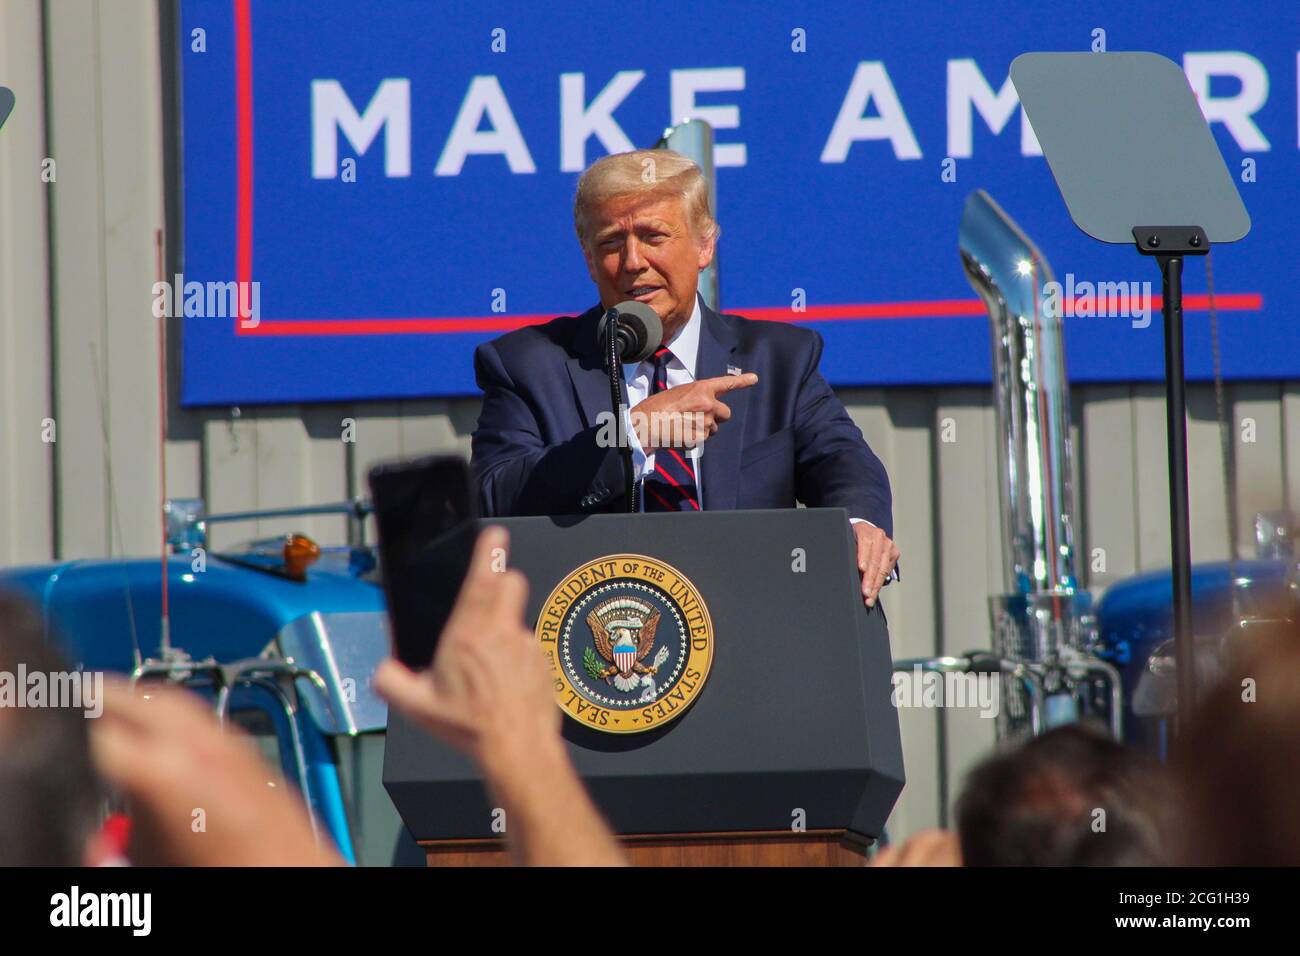 Le 45e président des États-Unis Donald J. Trump parle lors d'un événement à Old Forge, Pennsylvanie, où il a clamé son adversaire Joe Biden qui est de la région. Banque D'Images